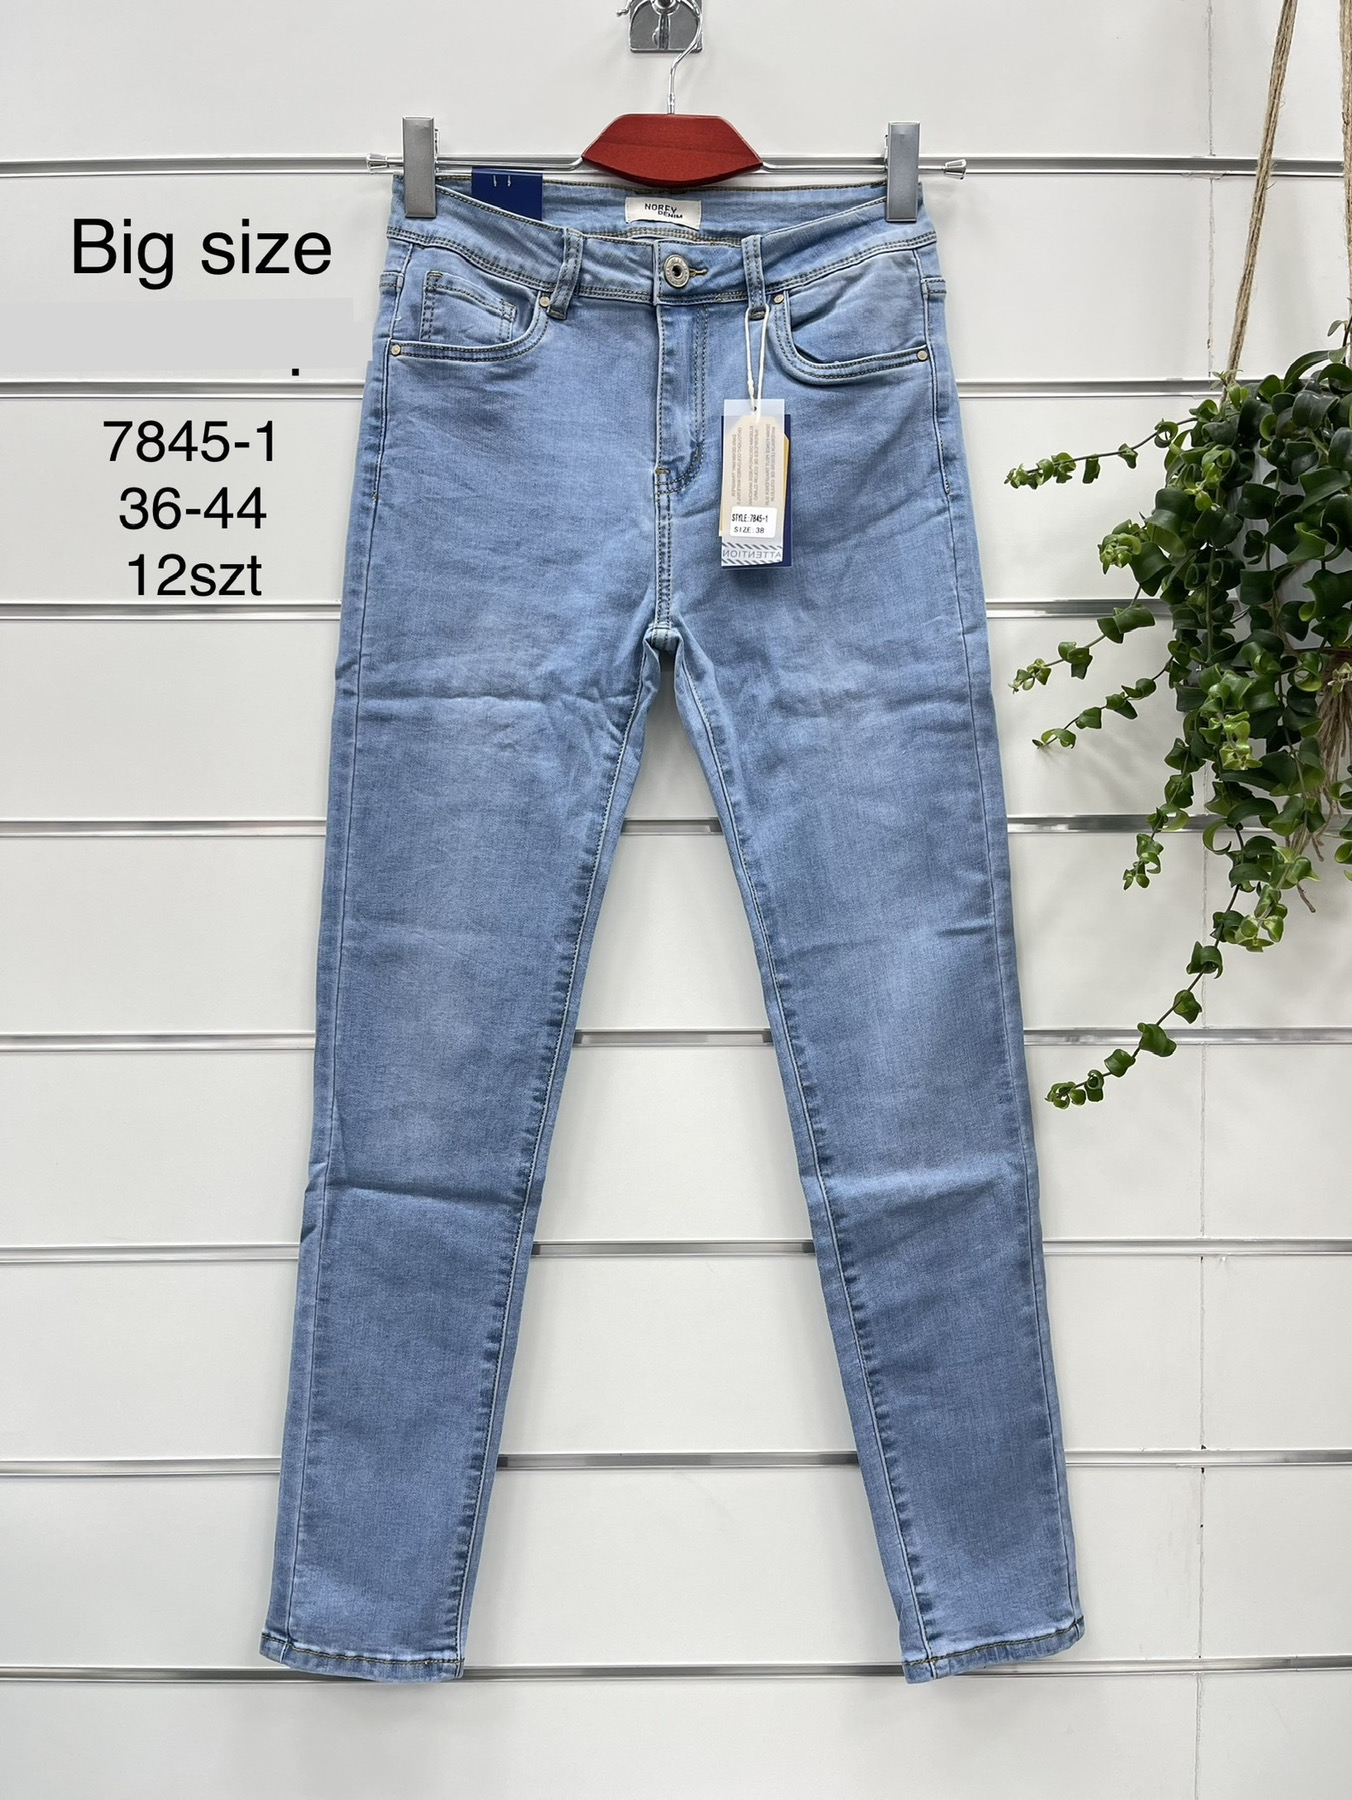 Spodnie  damskie jeans Roz 36-44.  1 kolor . Paczka 12szt